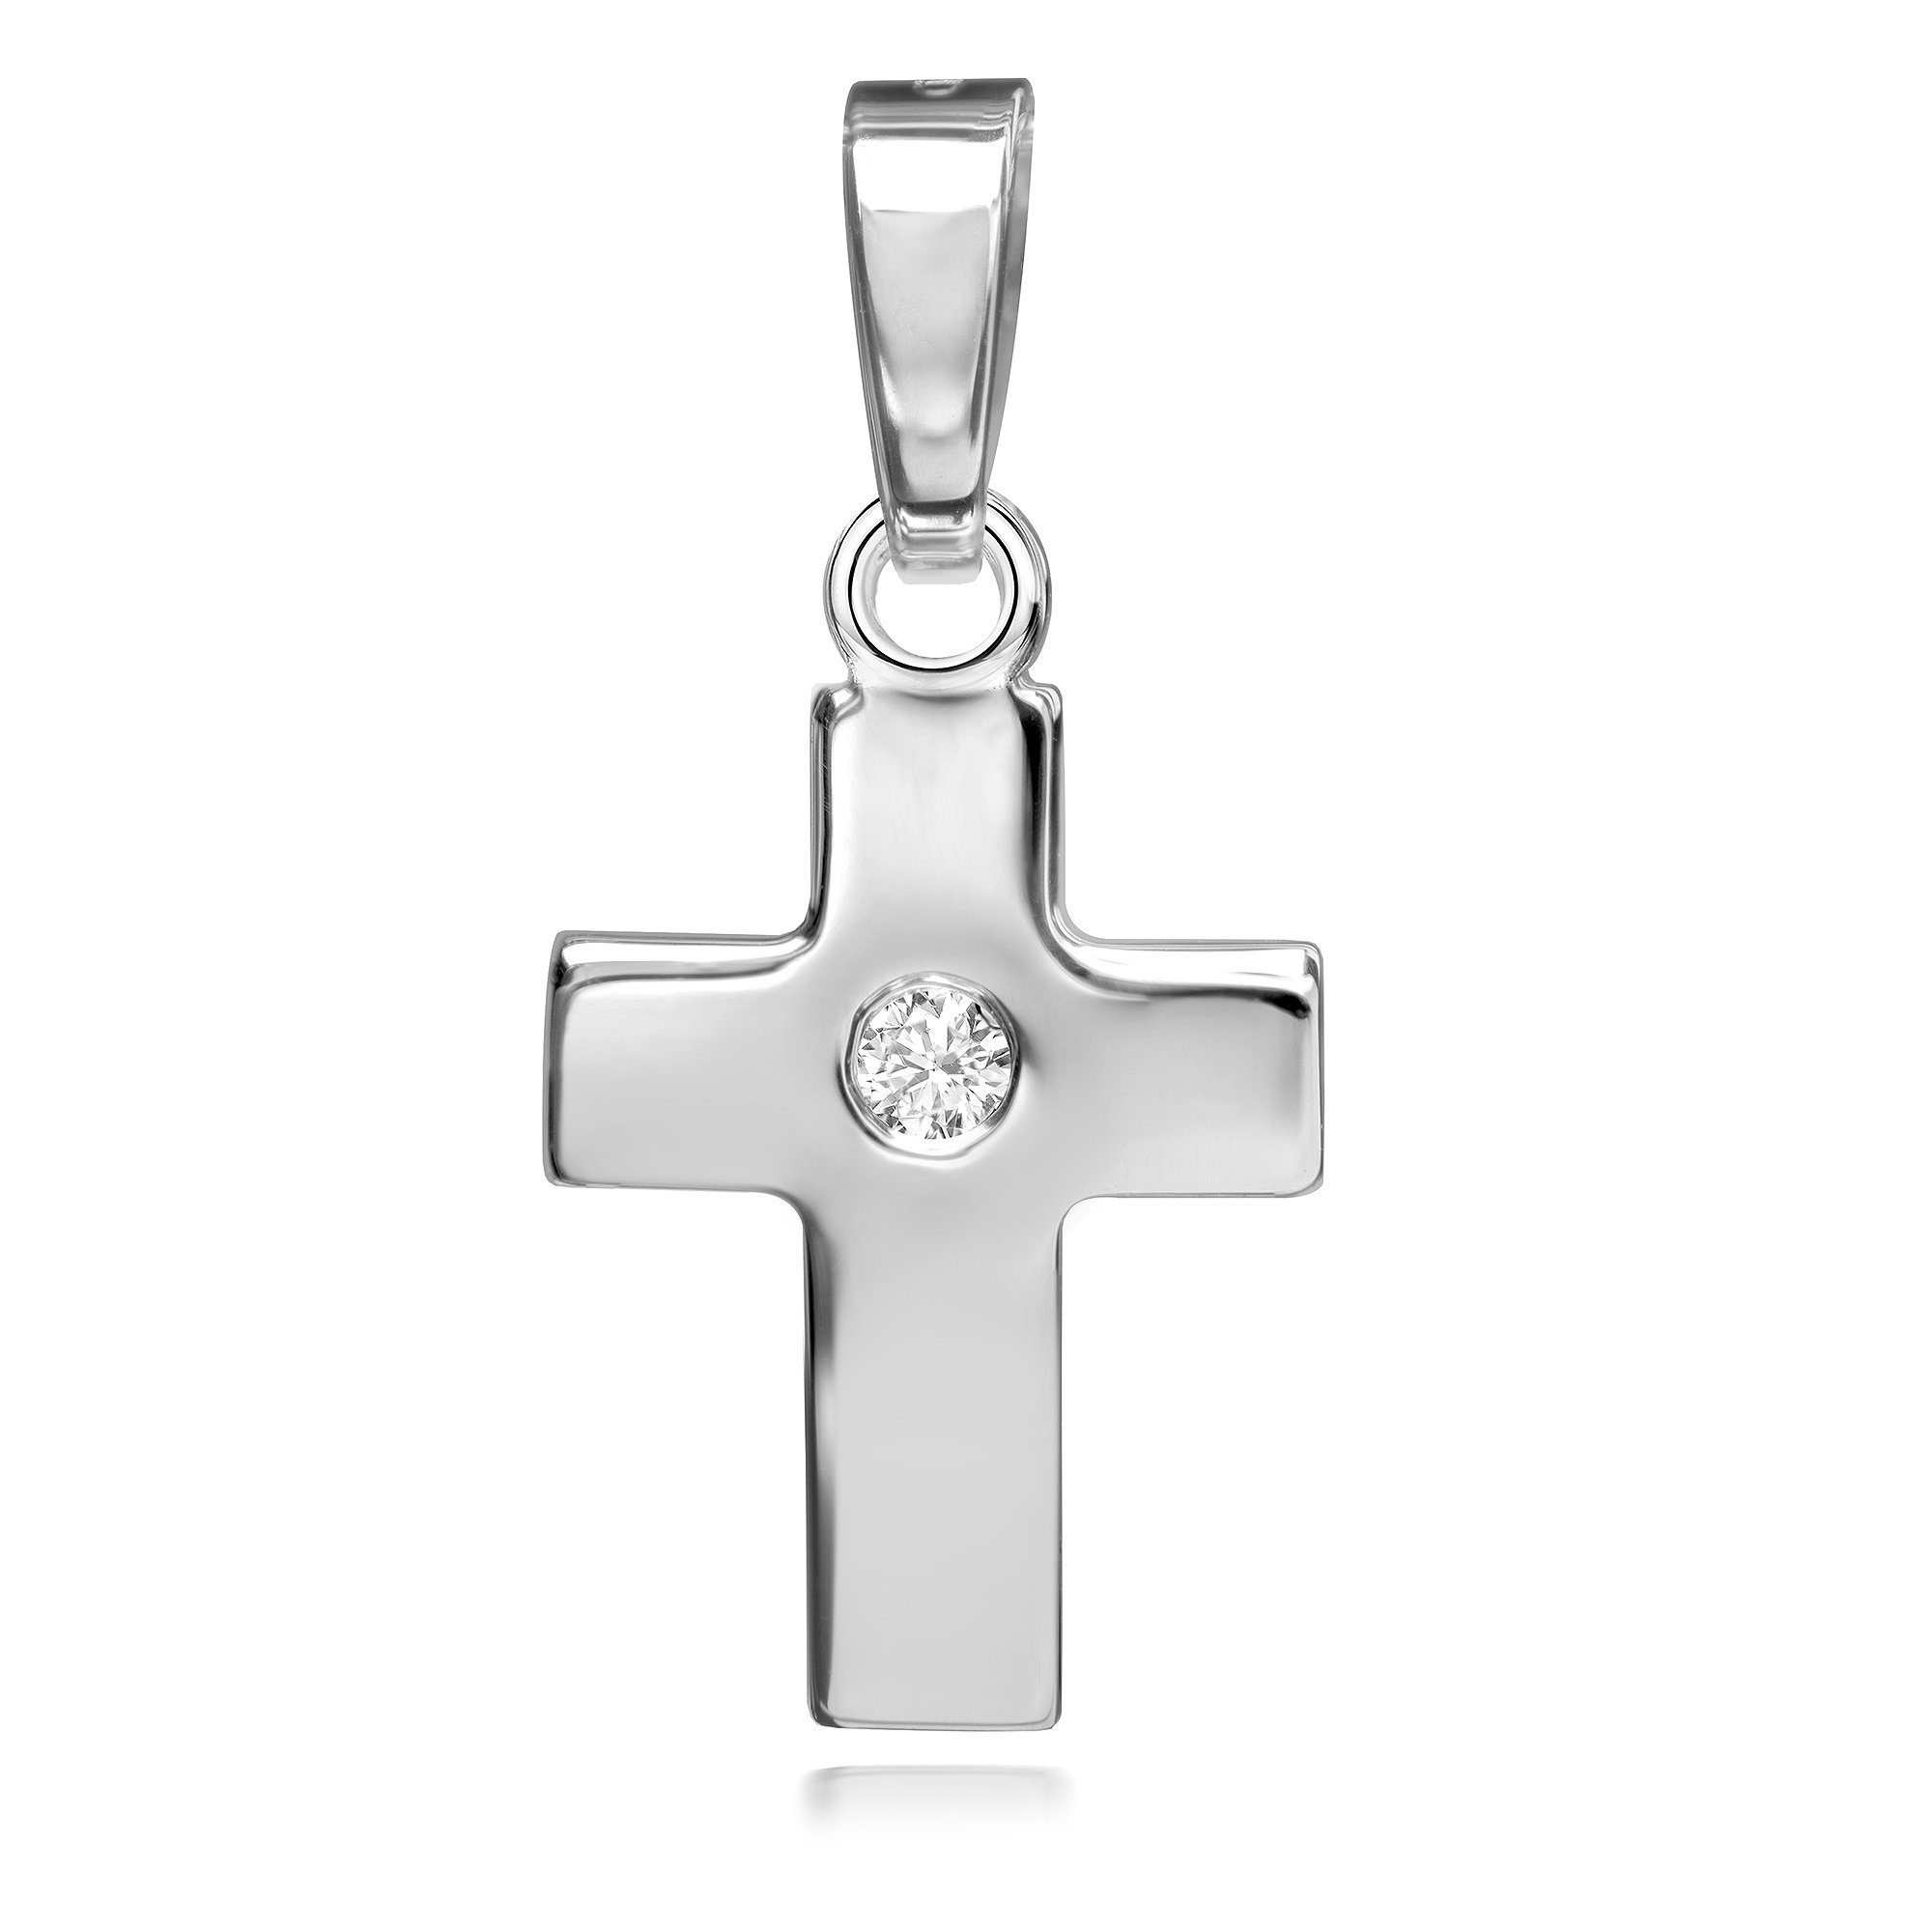 JEVELION Kreuzkette Kreuzanhänger 925 Silber mit Zirkonia - Made in Germany (Silberkreuz, für Damen und Herren), Mit Silberkette 925 - Länge wählbar 36 - 70 cm oder ohne Kette.